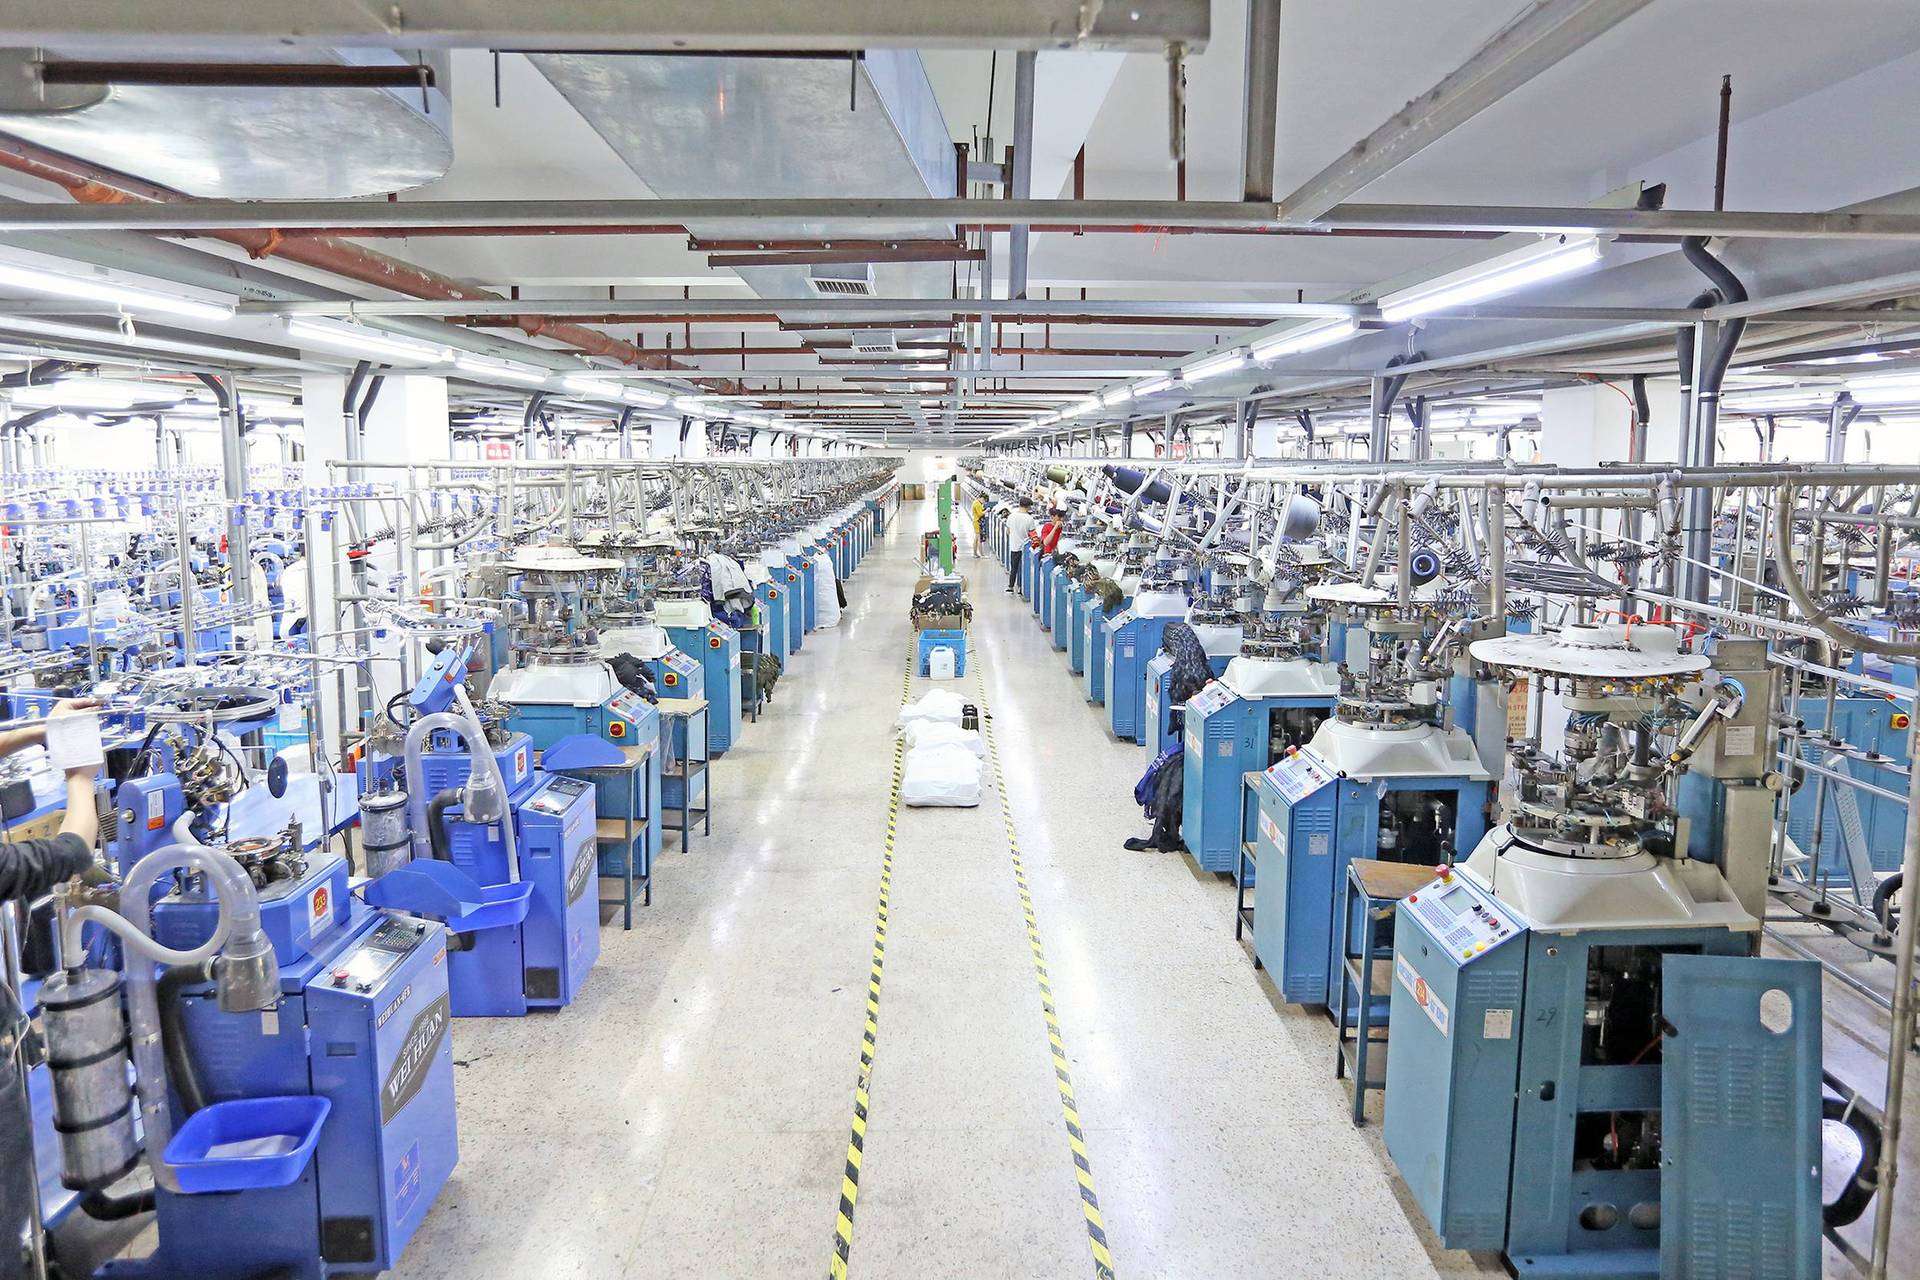 Taller de producción de calcetines de la fábrica Yuman